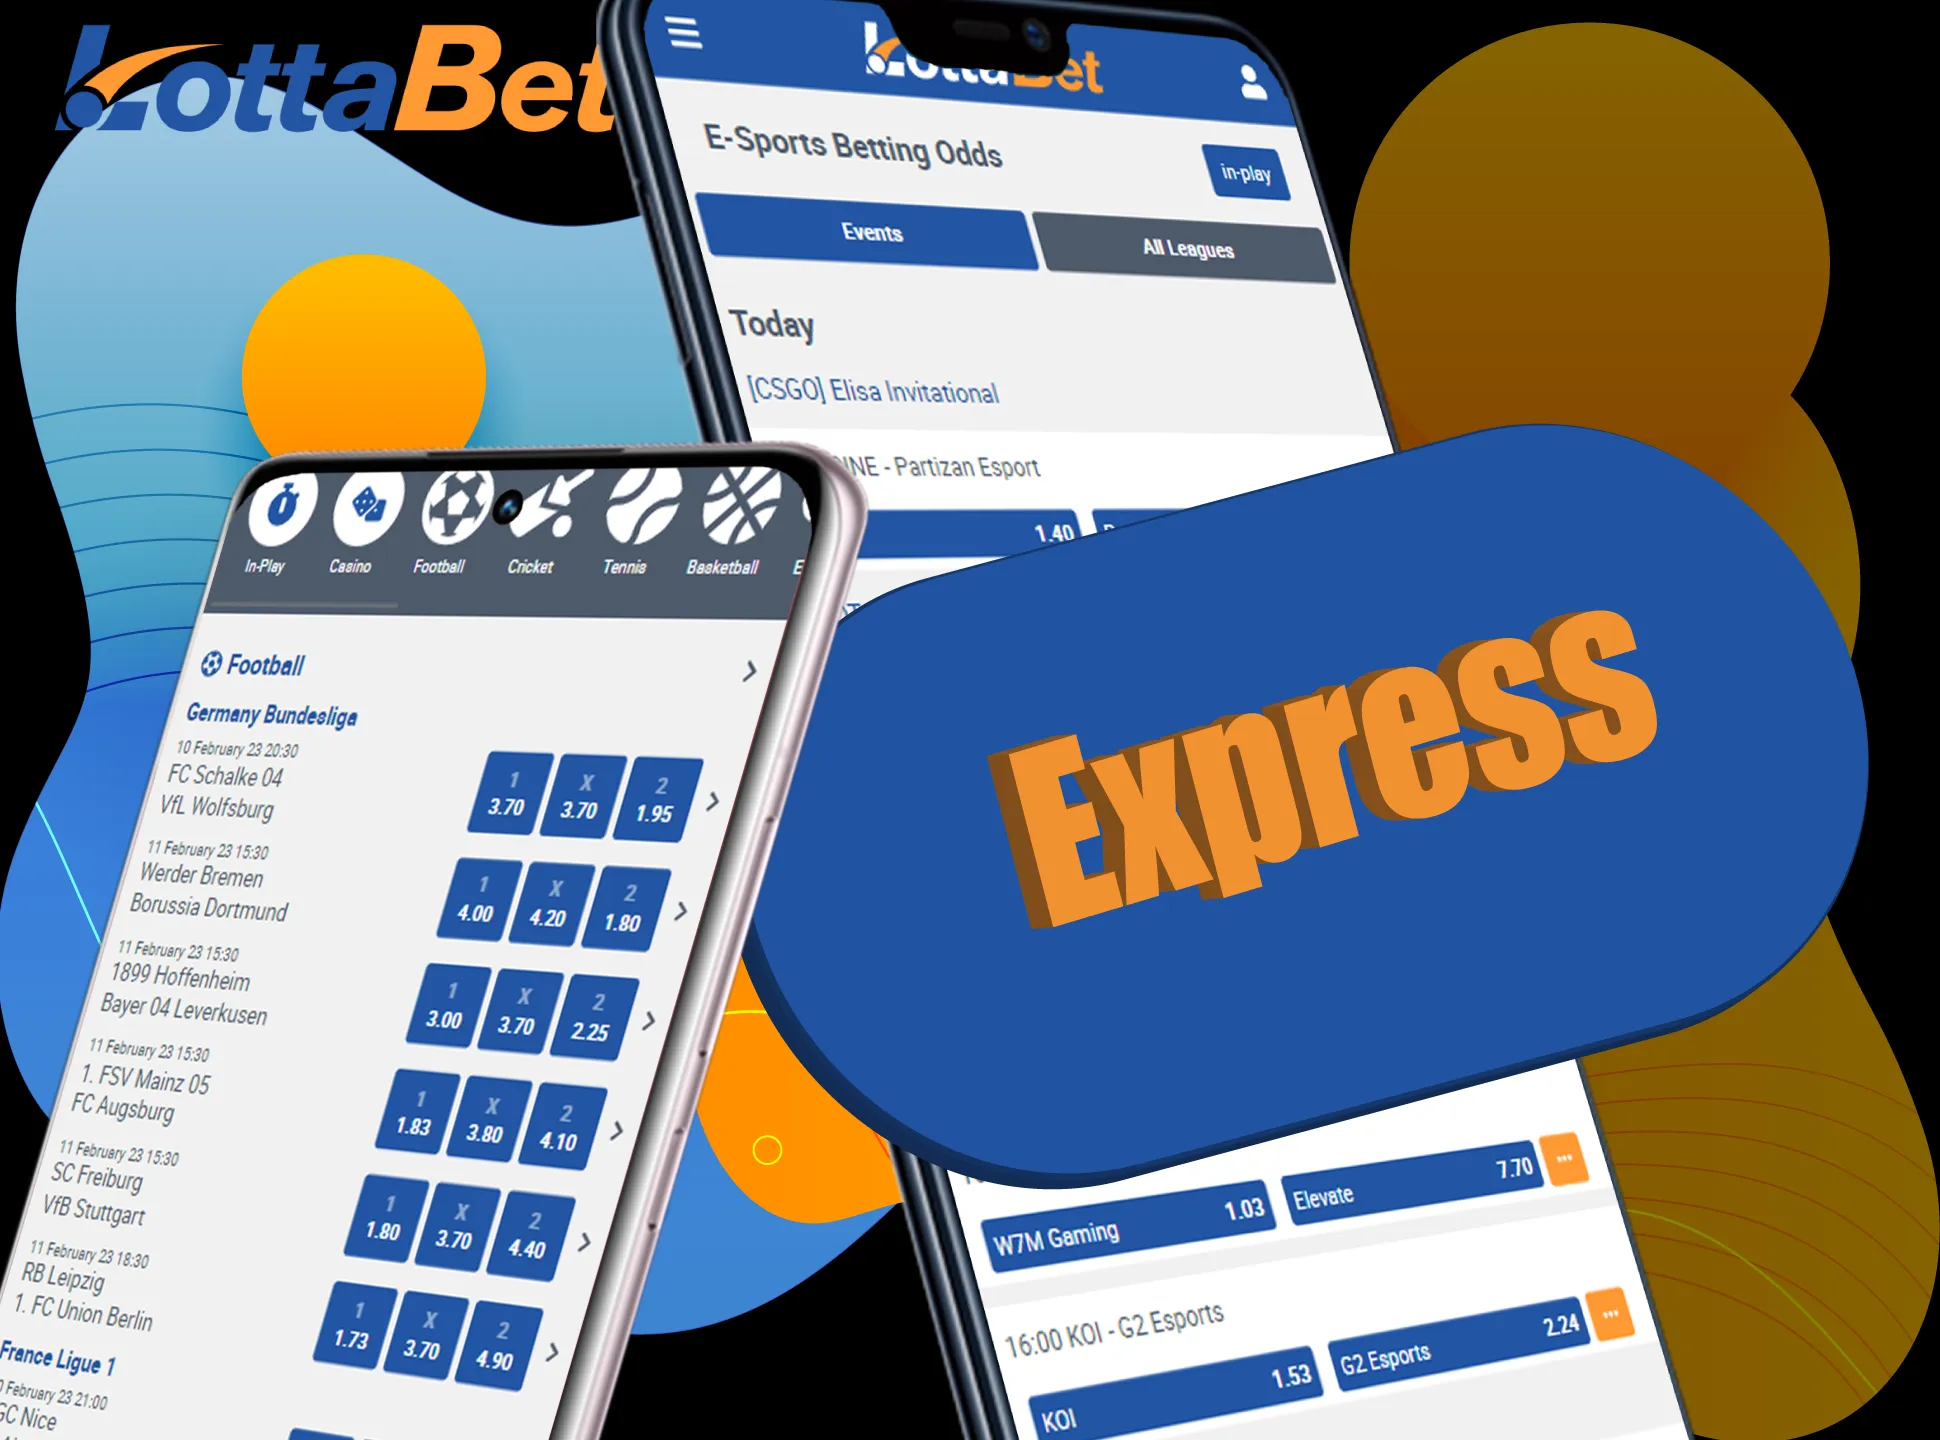 Express bets allow winning more.